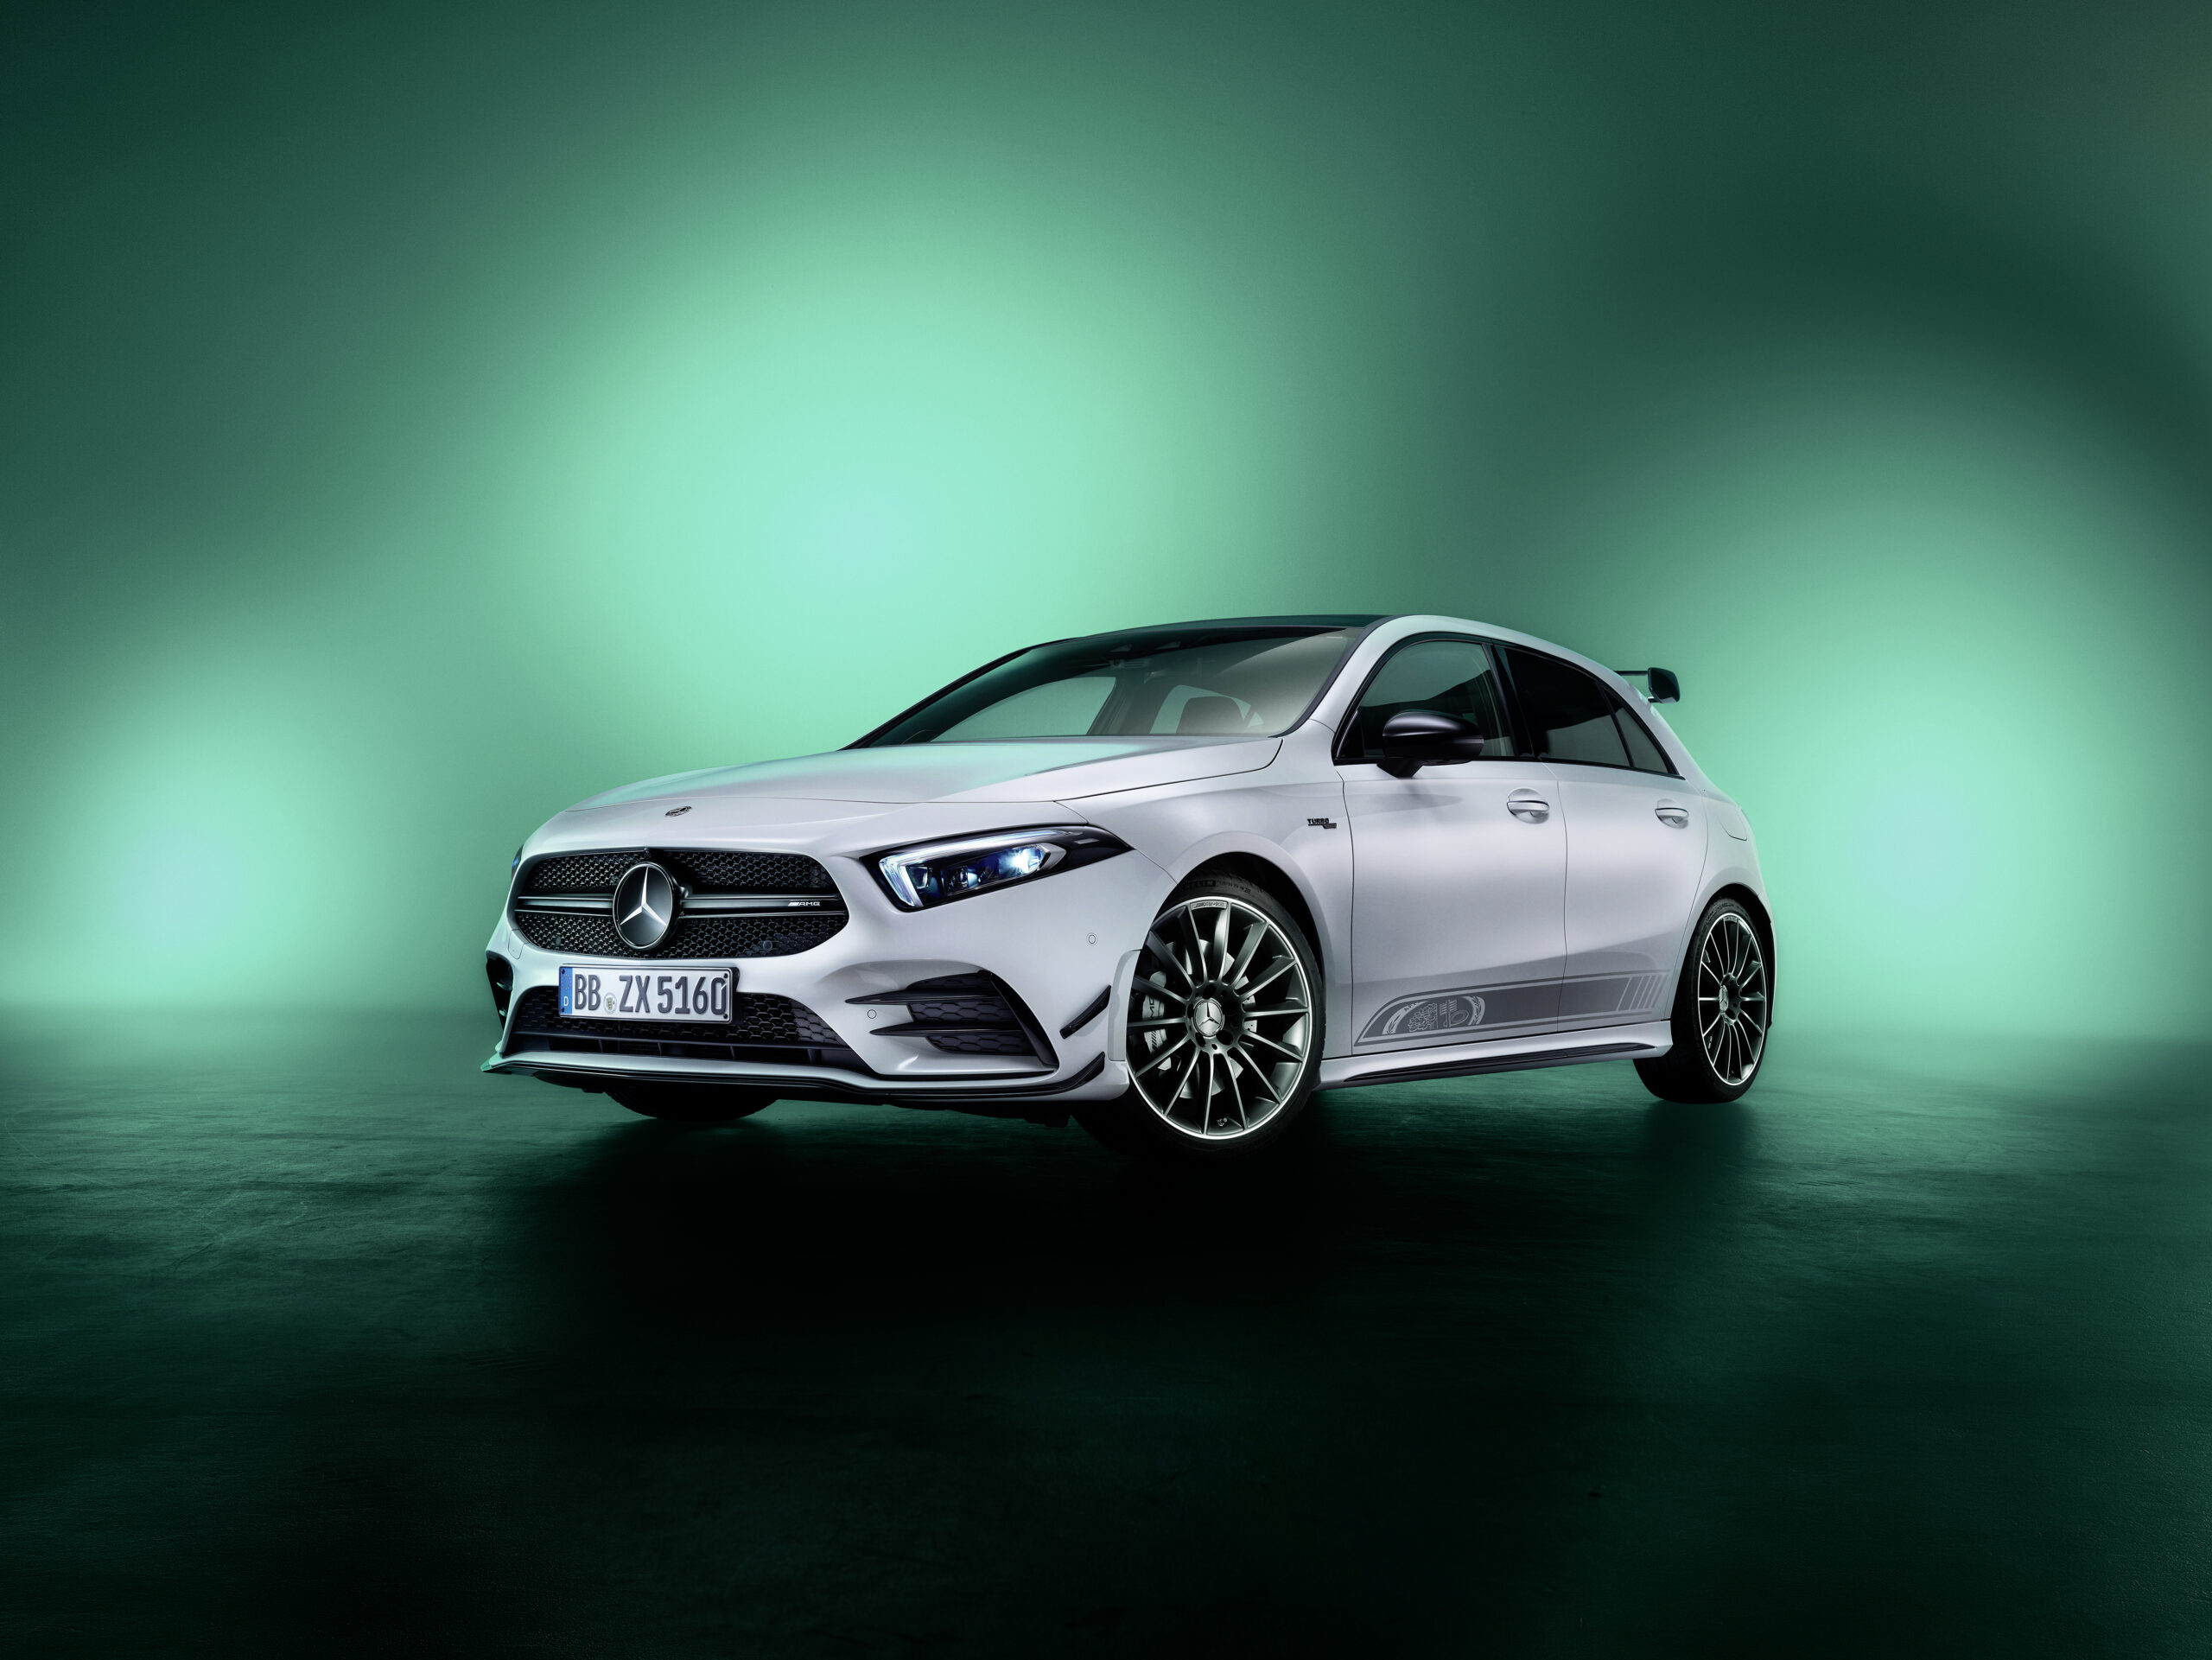 “Edition 55” – Modelos exclusivos edición especial para conmemorar el 55 Aniversario de Mercedes-AMG